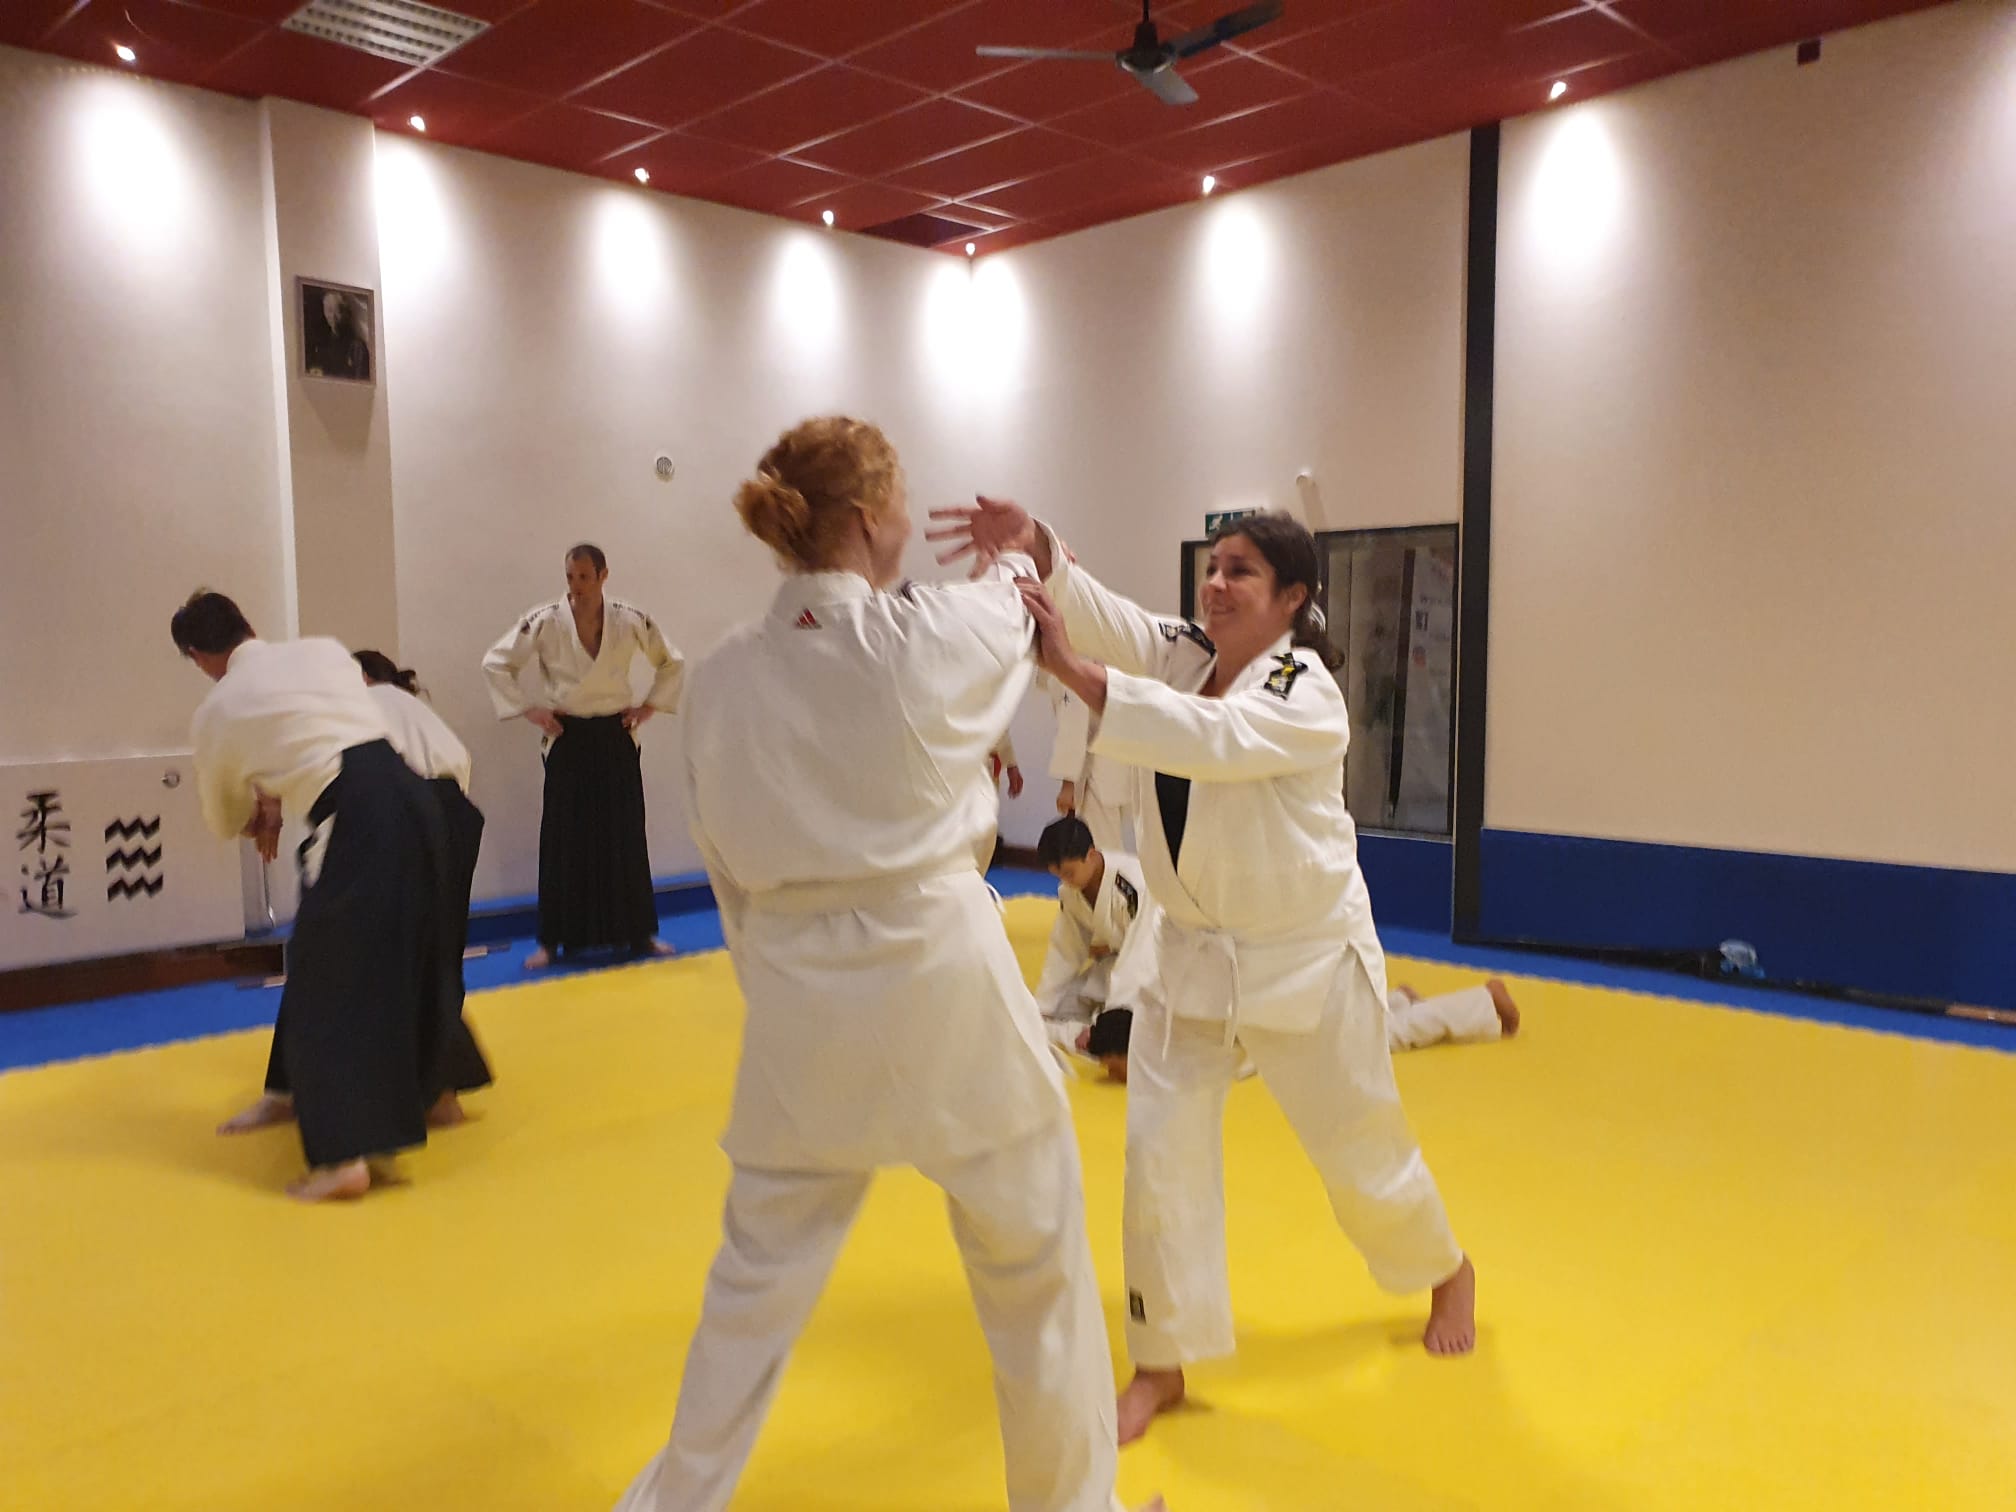 1e training aikido bij Dojoka